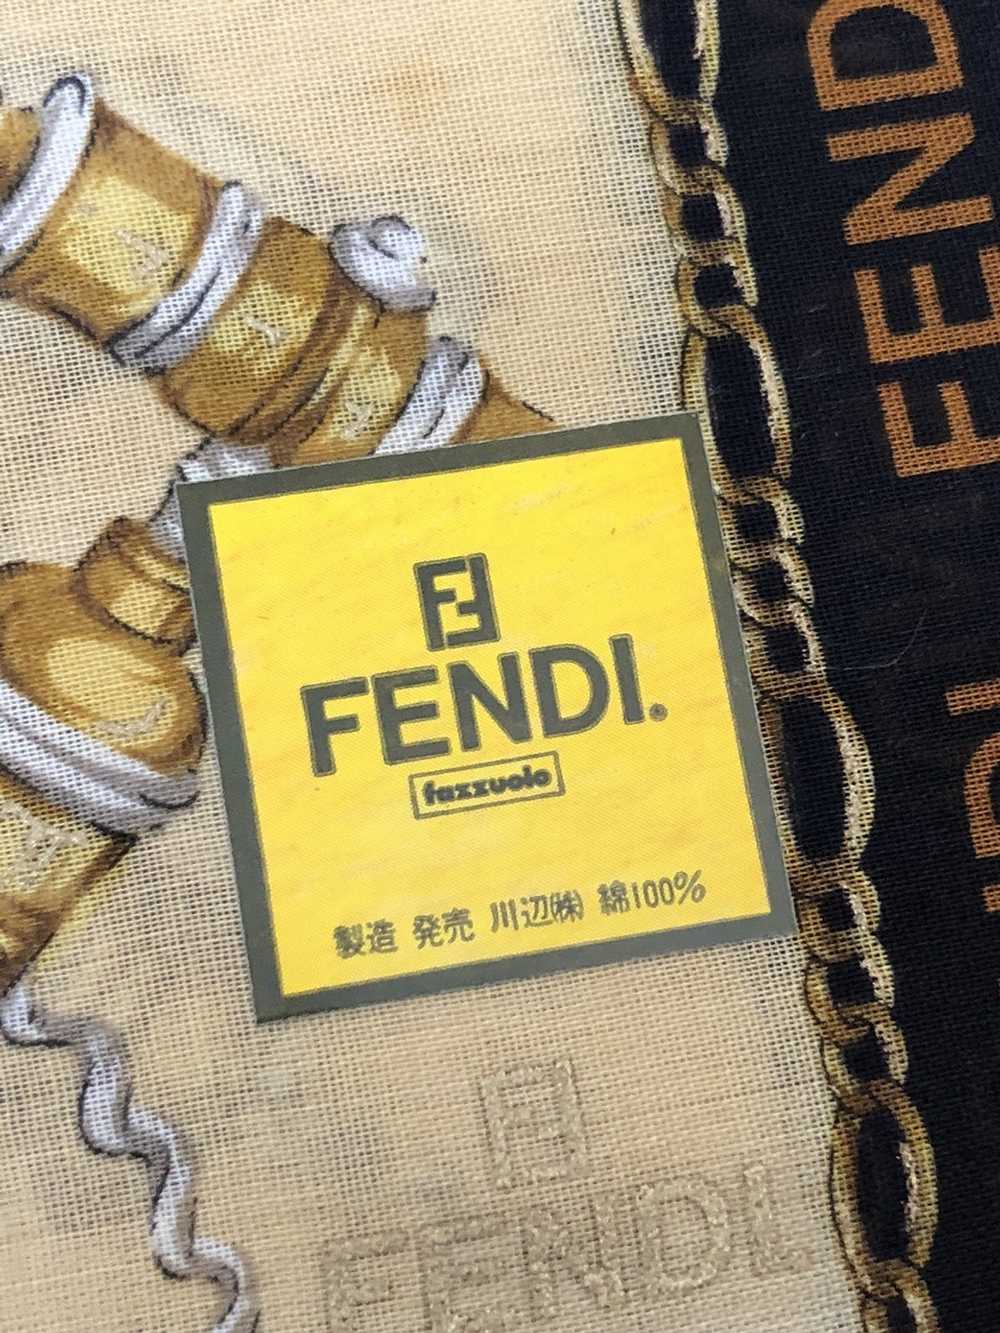 Fendi Fendi logo scarf - image 2